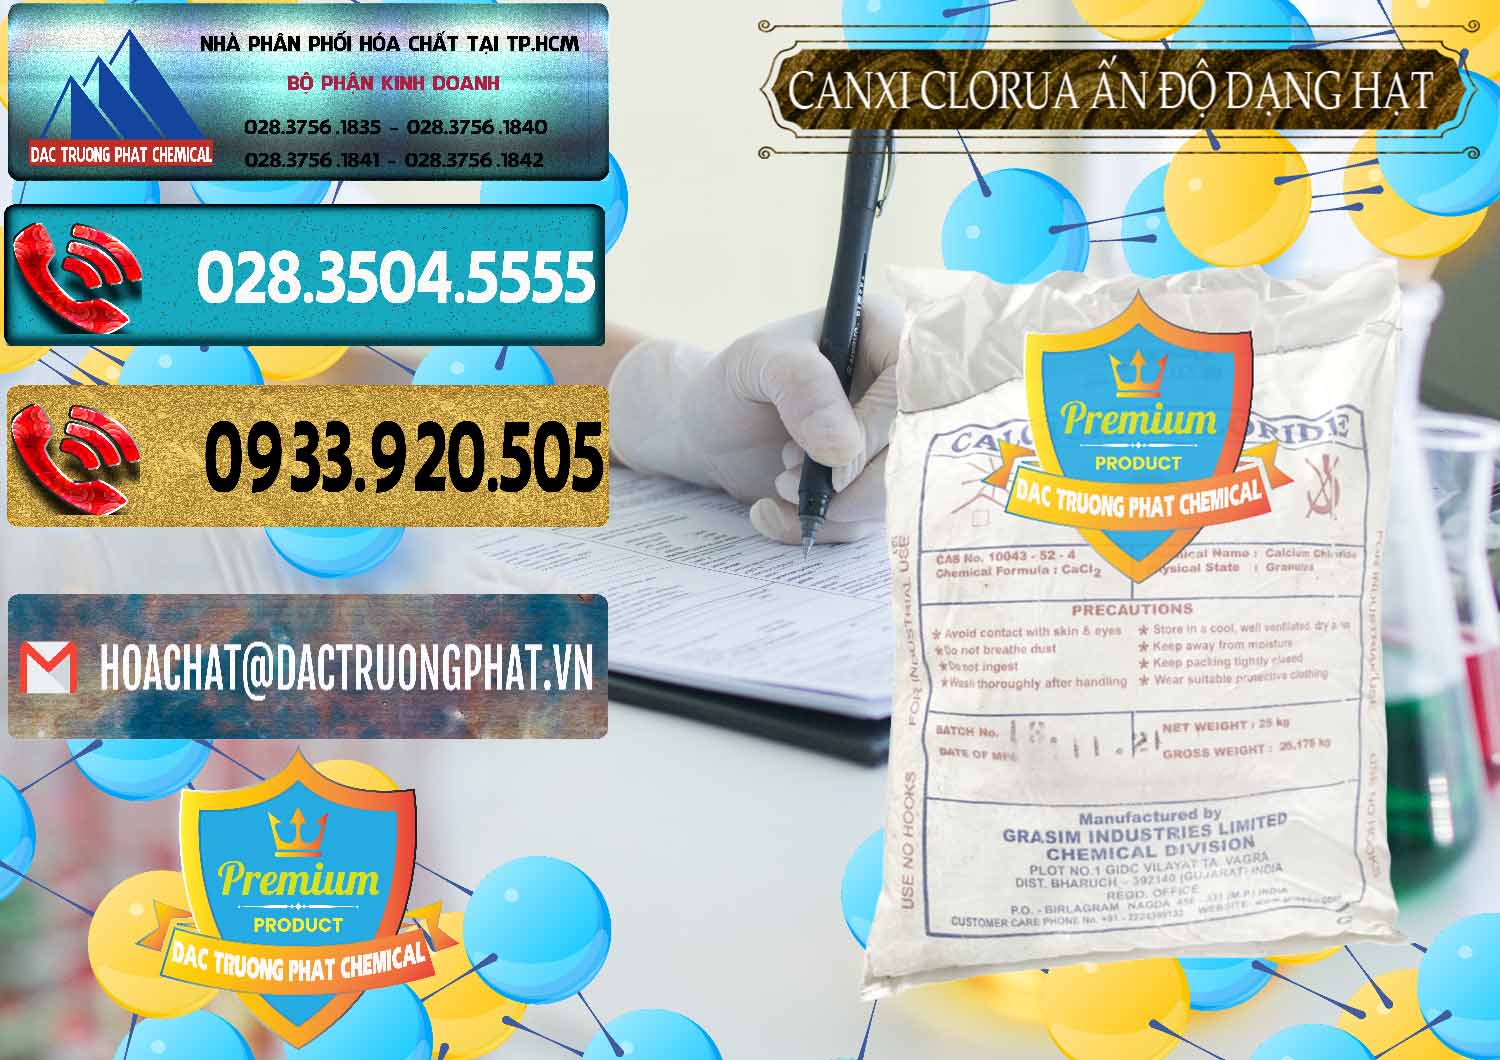 Đơn vị chuyên cung cấp _ bán CaCl2 – Canxi Clorua Dạng Hạt Aditya Birla Grasim Ấn Độ India - 0418 - Cung cấp và nhập khẩu hóa chất tại TP.HCM - hoachatdetnhuom.com